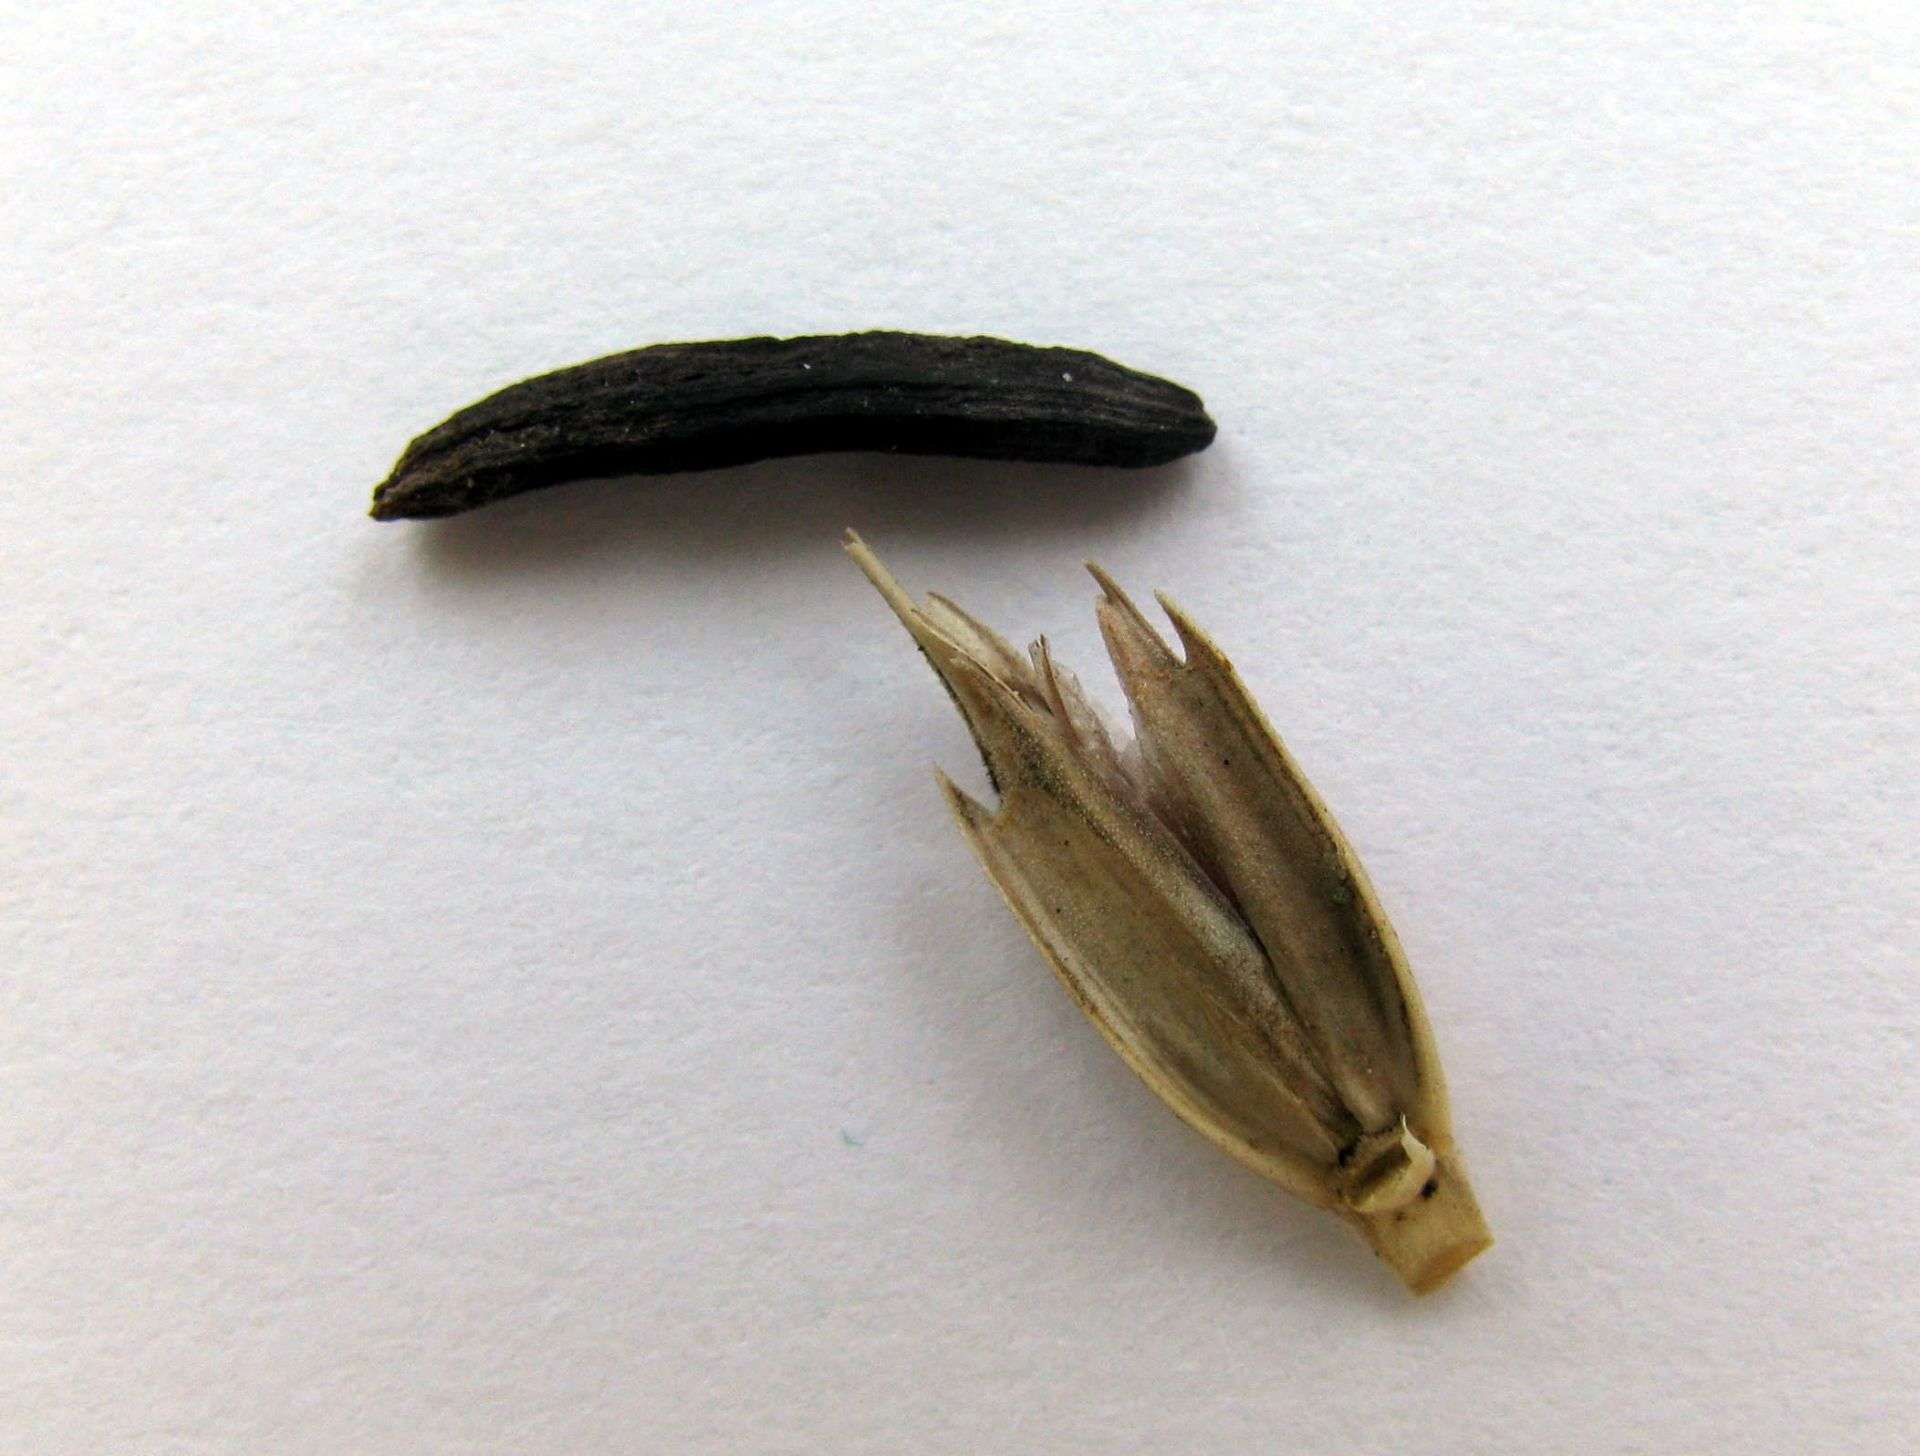 Ražena glavnica napada i druge žitarice – npr. jednozrnu pšenicu (Triticum monococcum): Arheobotanička bašta Muzeja Vovodine u Novom Sadu